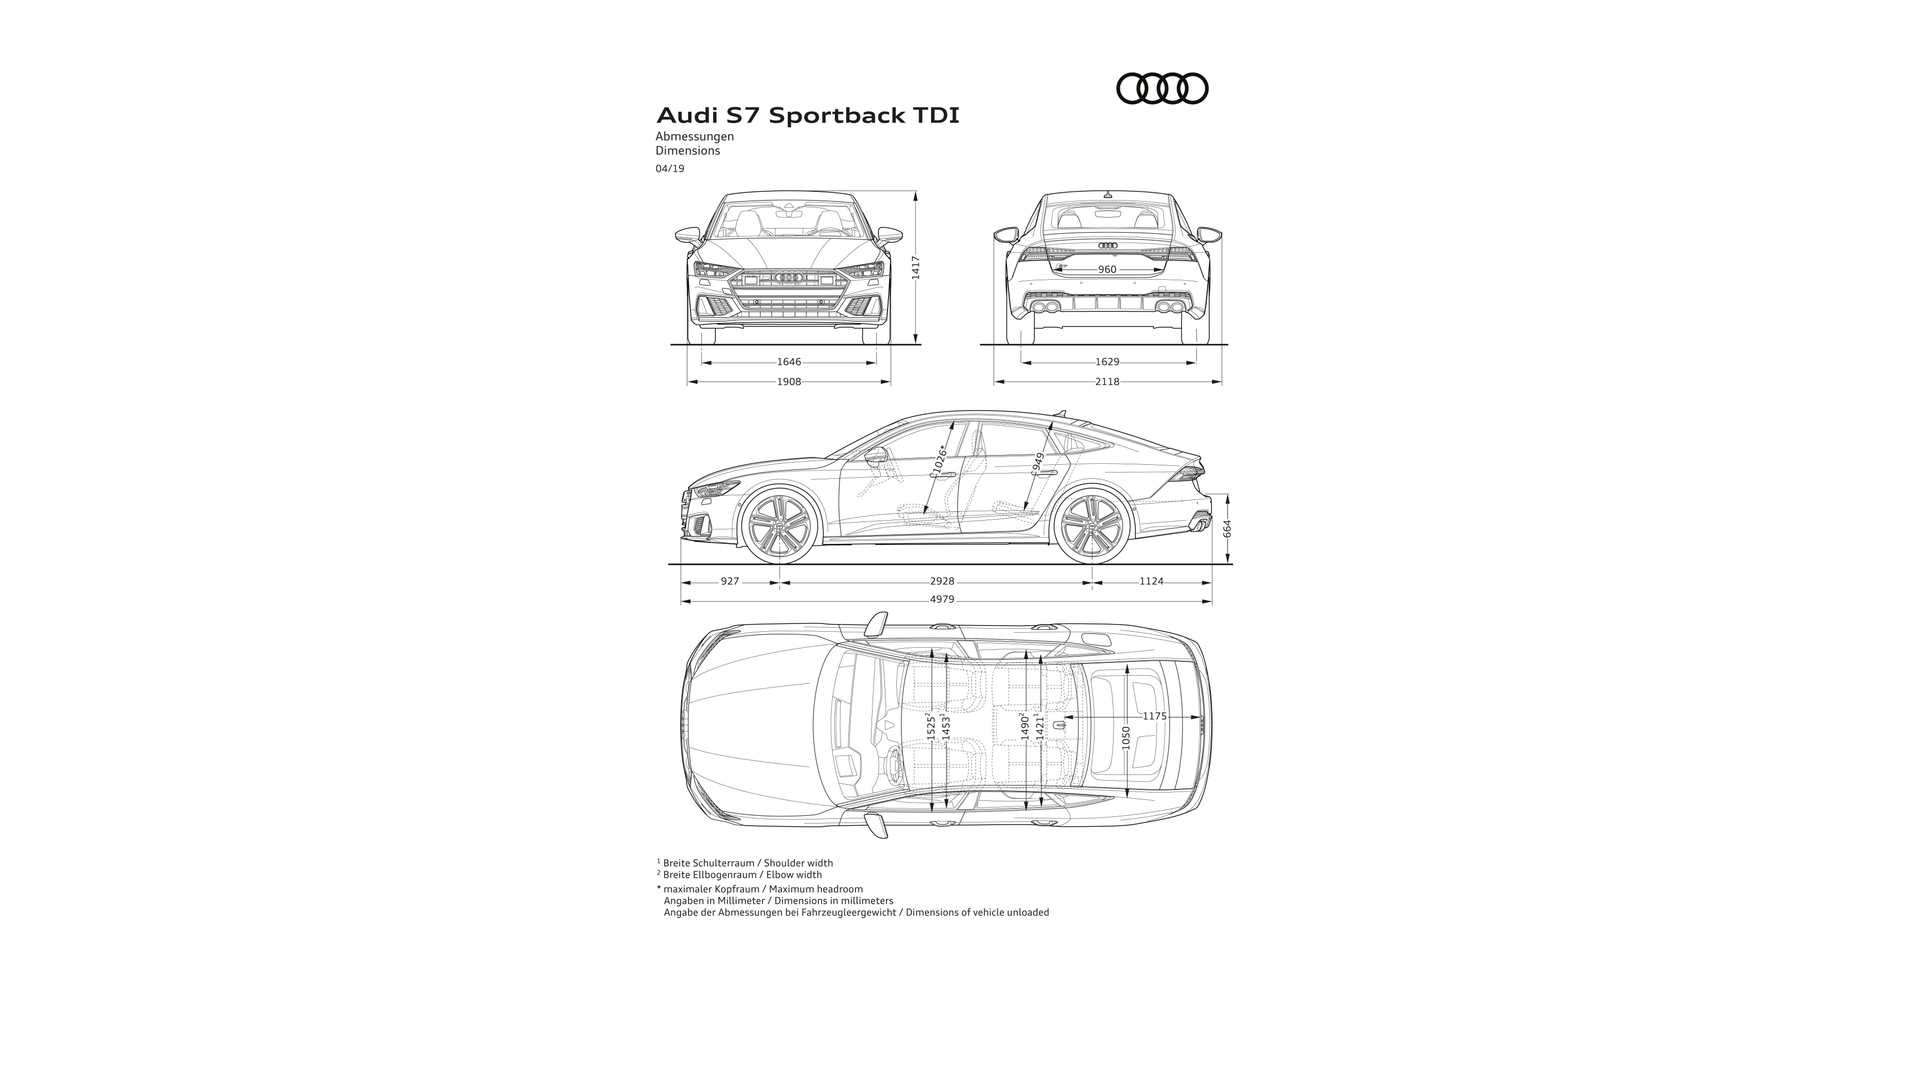 2019 Audi S7 Sportback TDI Dimensions Wallpapers #23 of 23